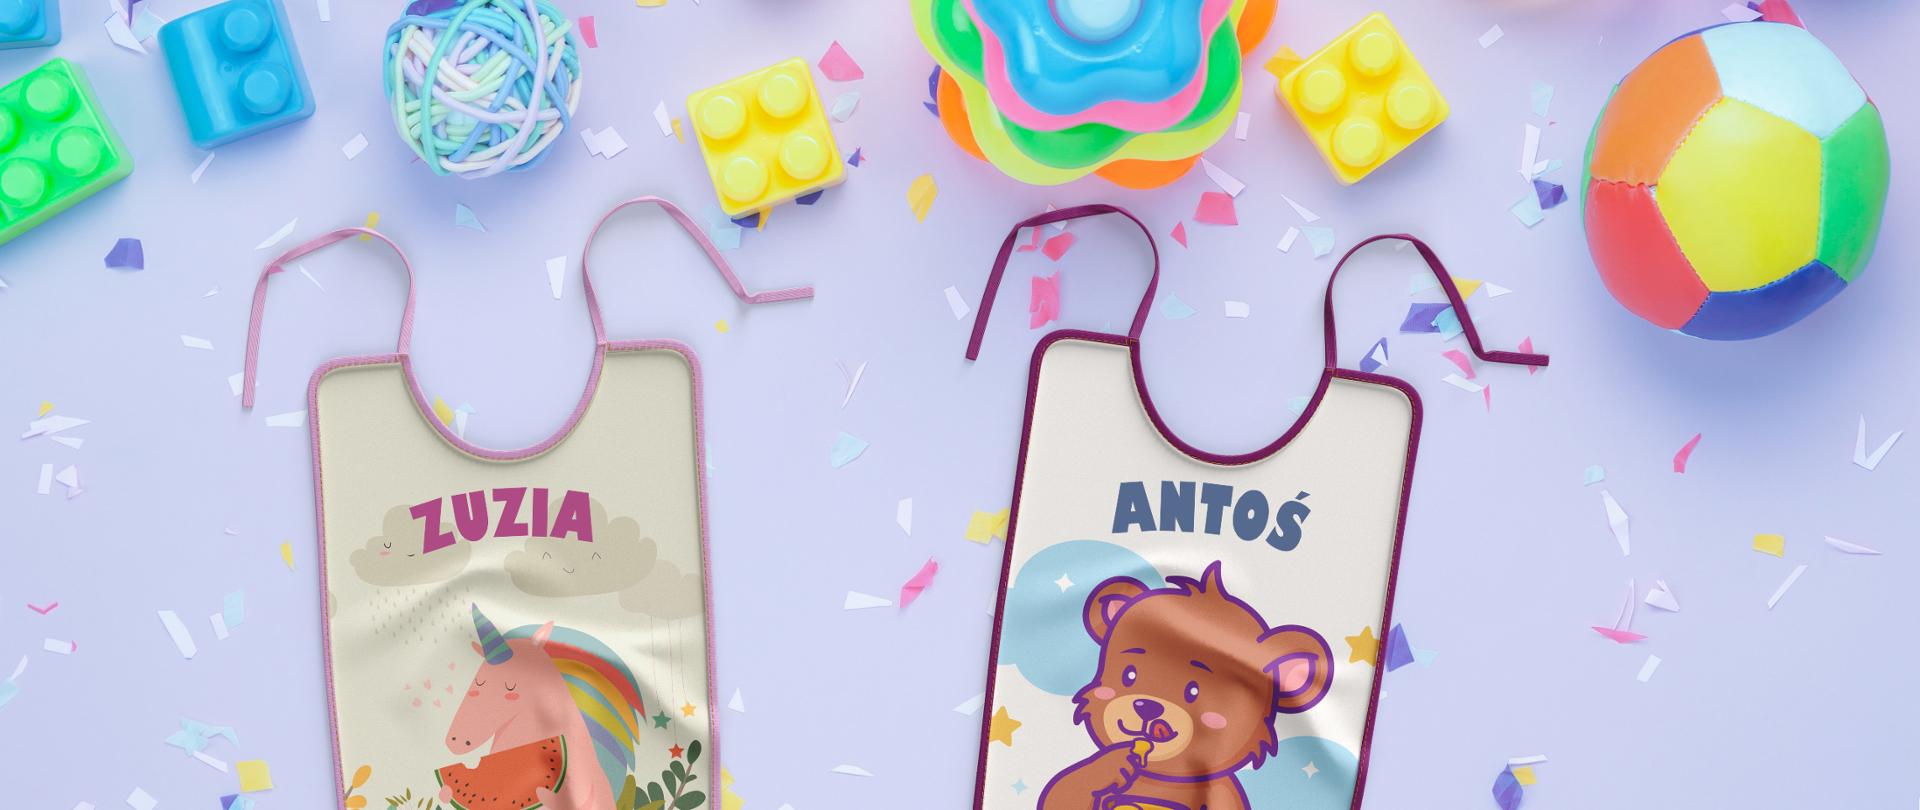 Zdjęcie - na fioletowym tle niemowlęce zabawki (piłka, klocki) oraz dwa śliniaczki. Na jednym z nich imię Zuzia, na drugim - Antoś.